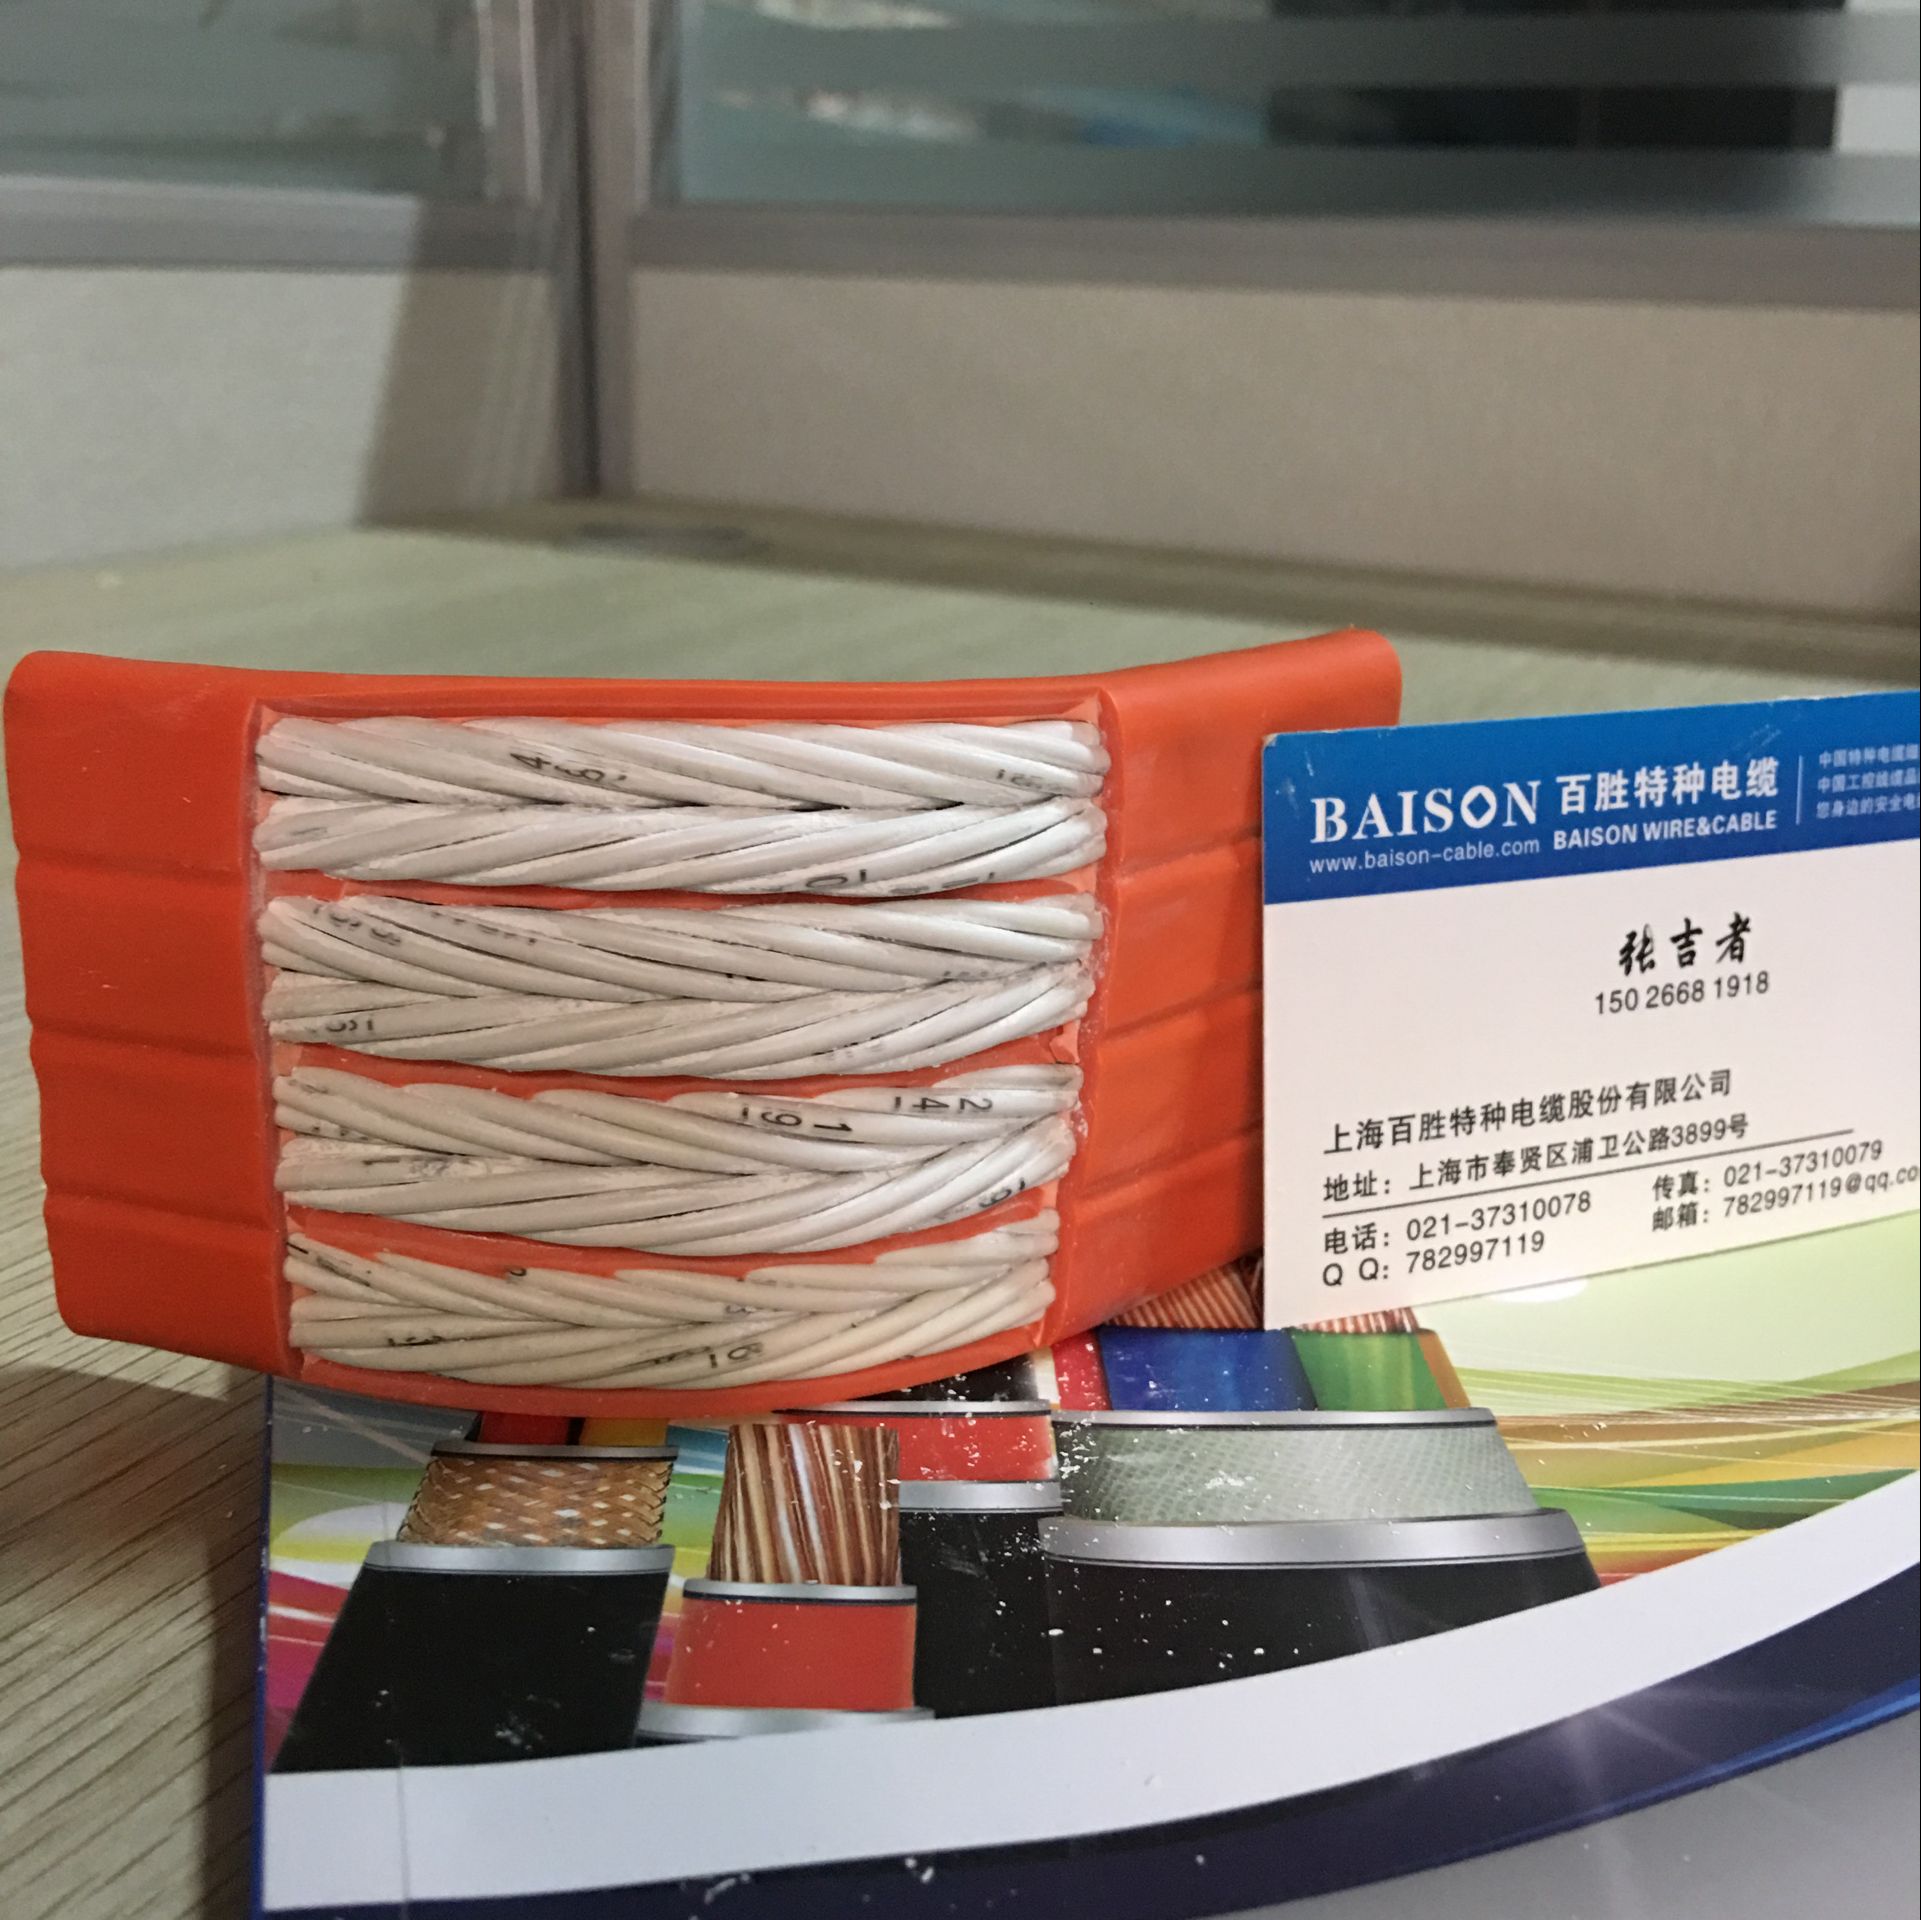 上海市电梯电缆直销厂家电梯电缆直销 上海拖链电缆厂家批发 拖链电线电缆 电梯电缆